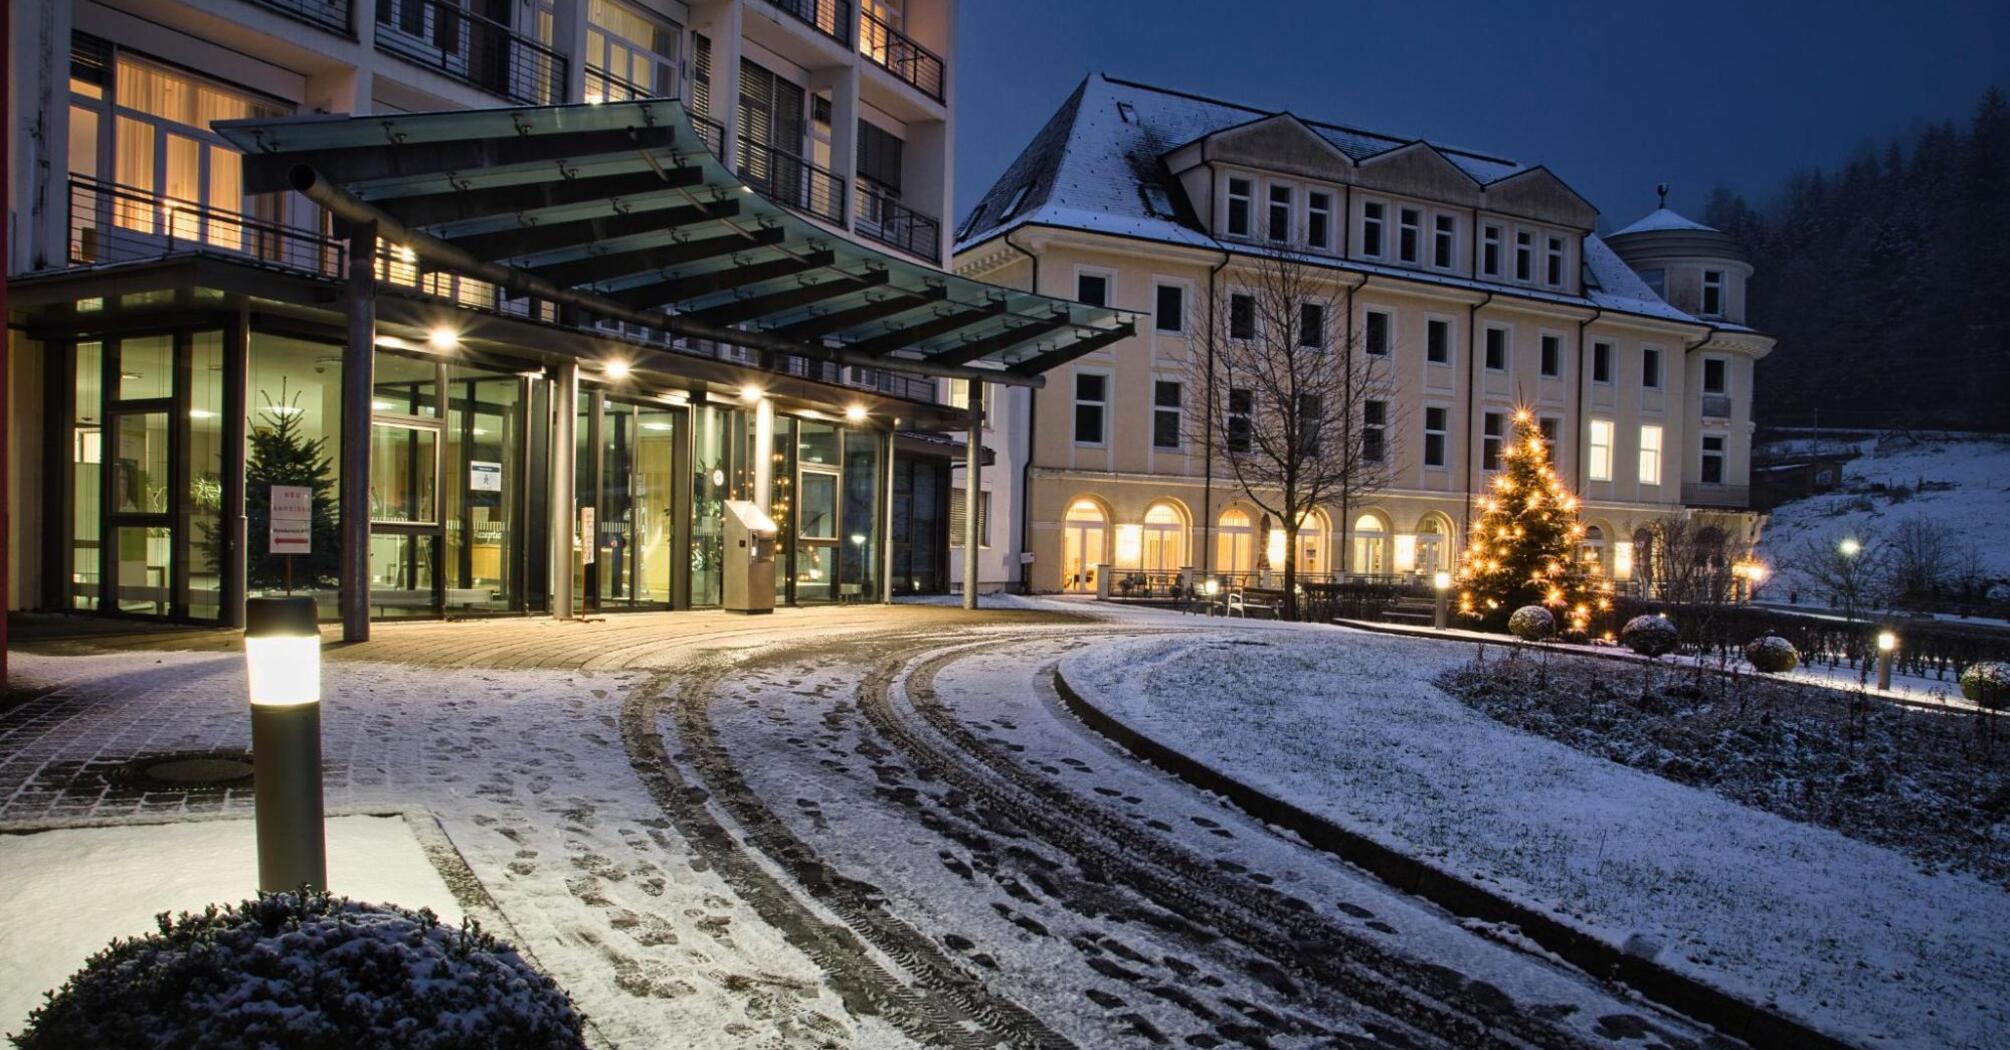 Modern hotel in a snowy city